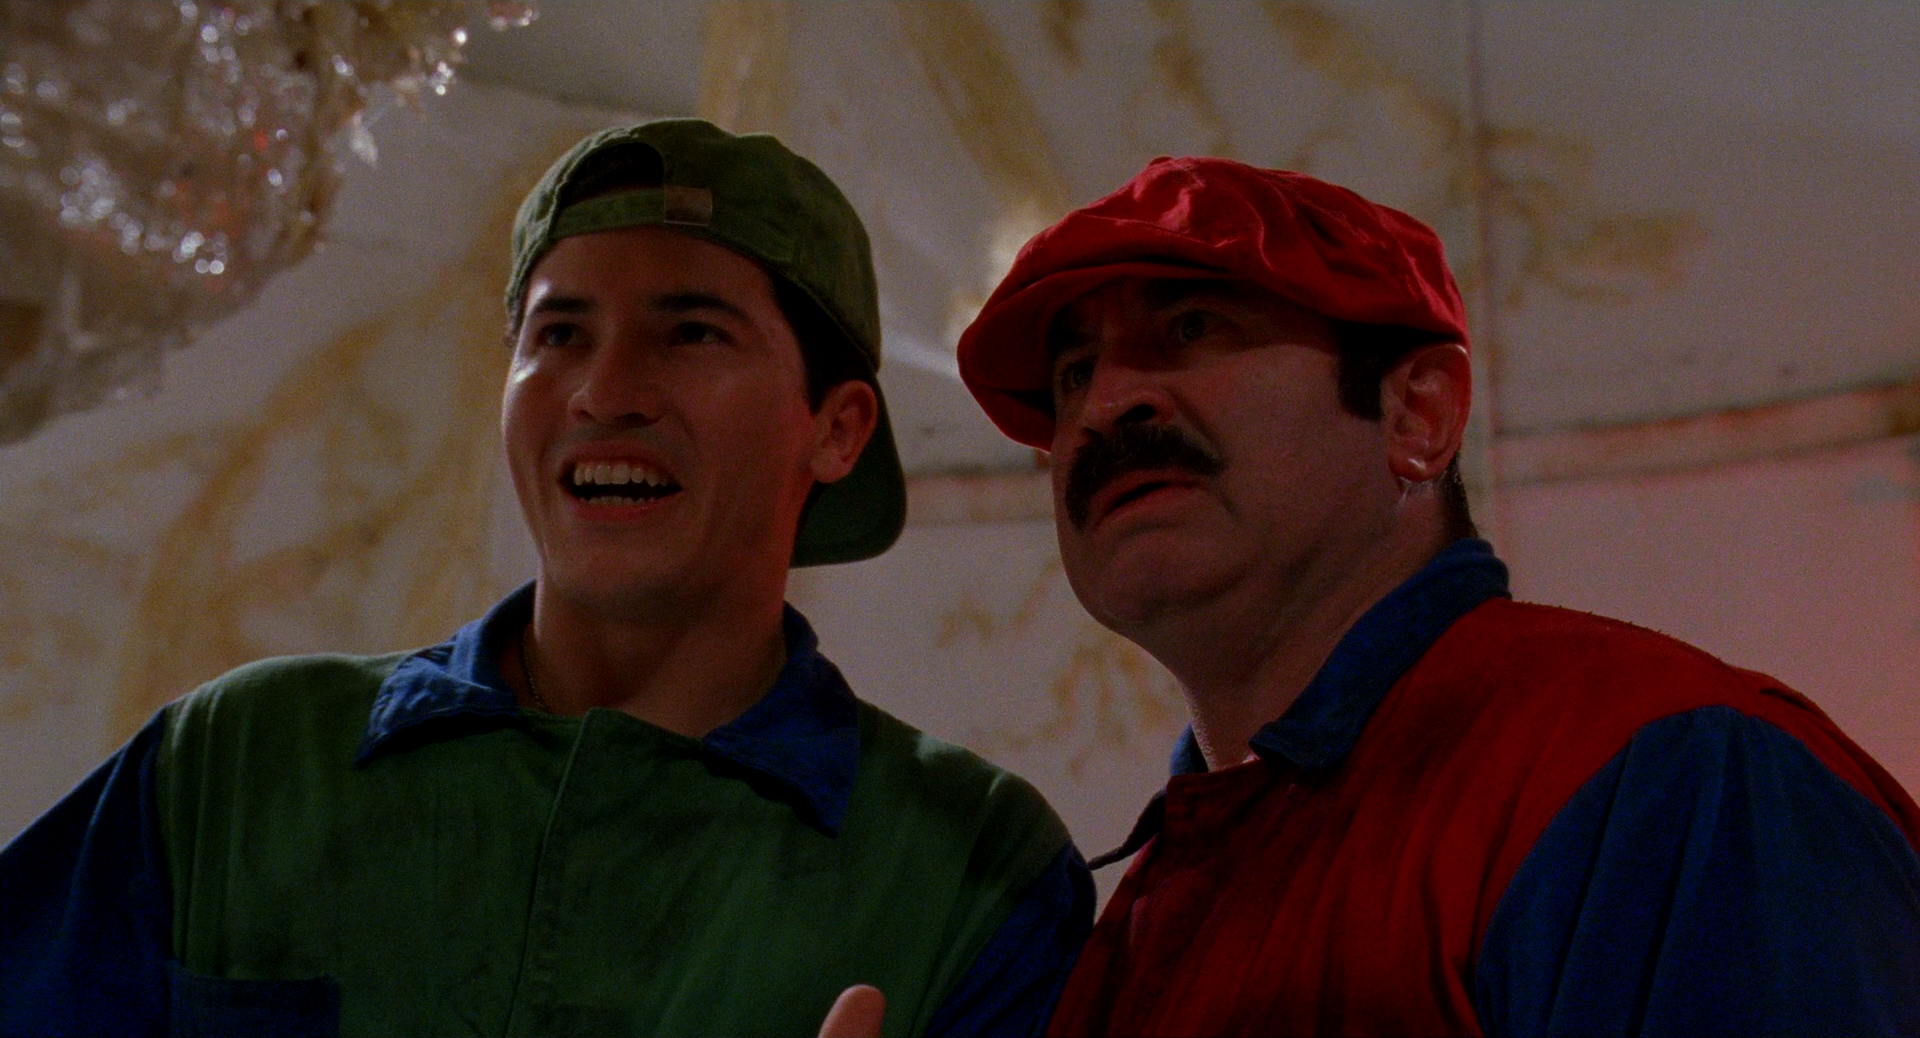 John Leguizamo and the late Bob Hoskins as Luigi and Mario